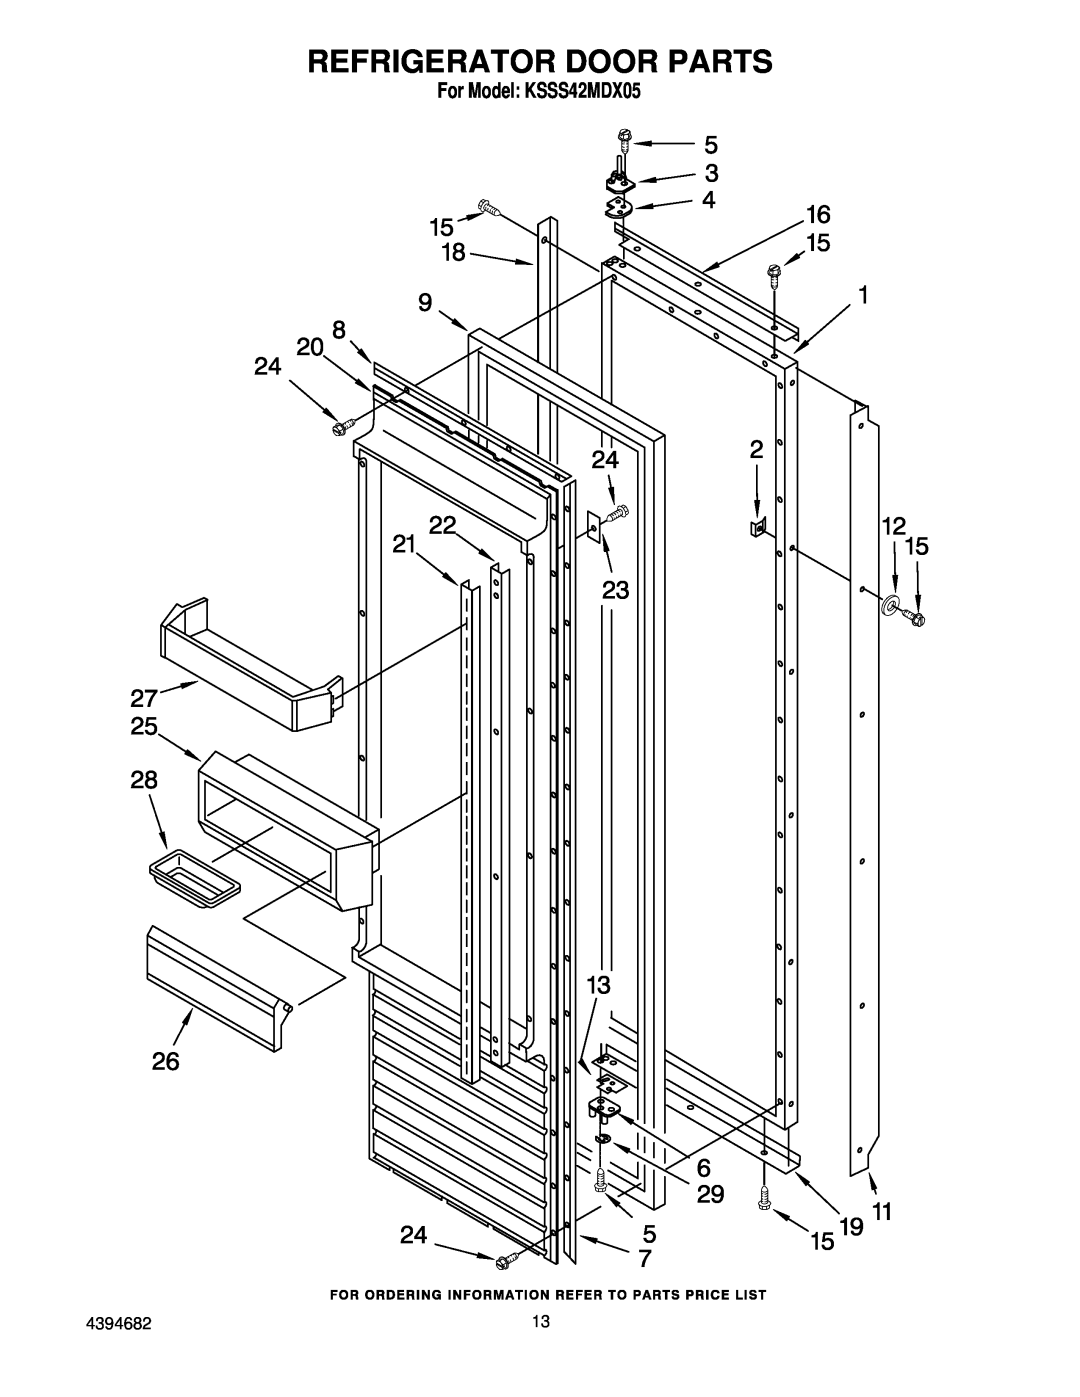 KitchenAid manual Refrigerator Door Parts, For Model KSSS42MDX05 